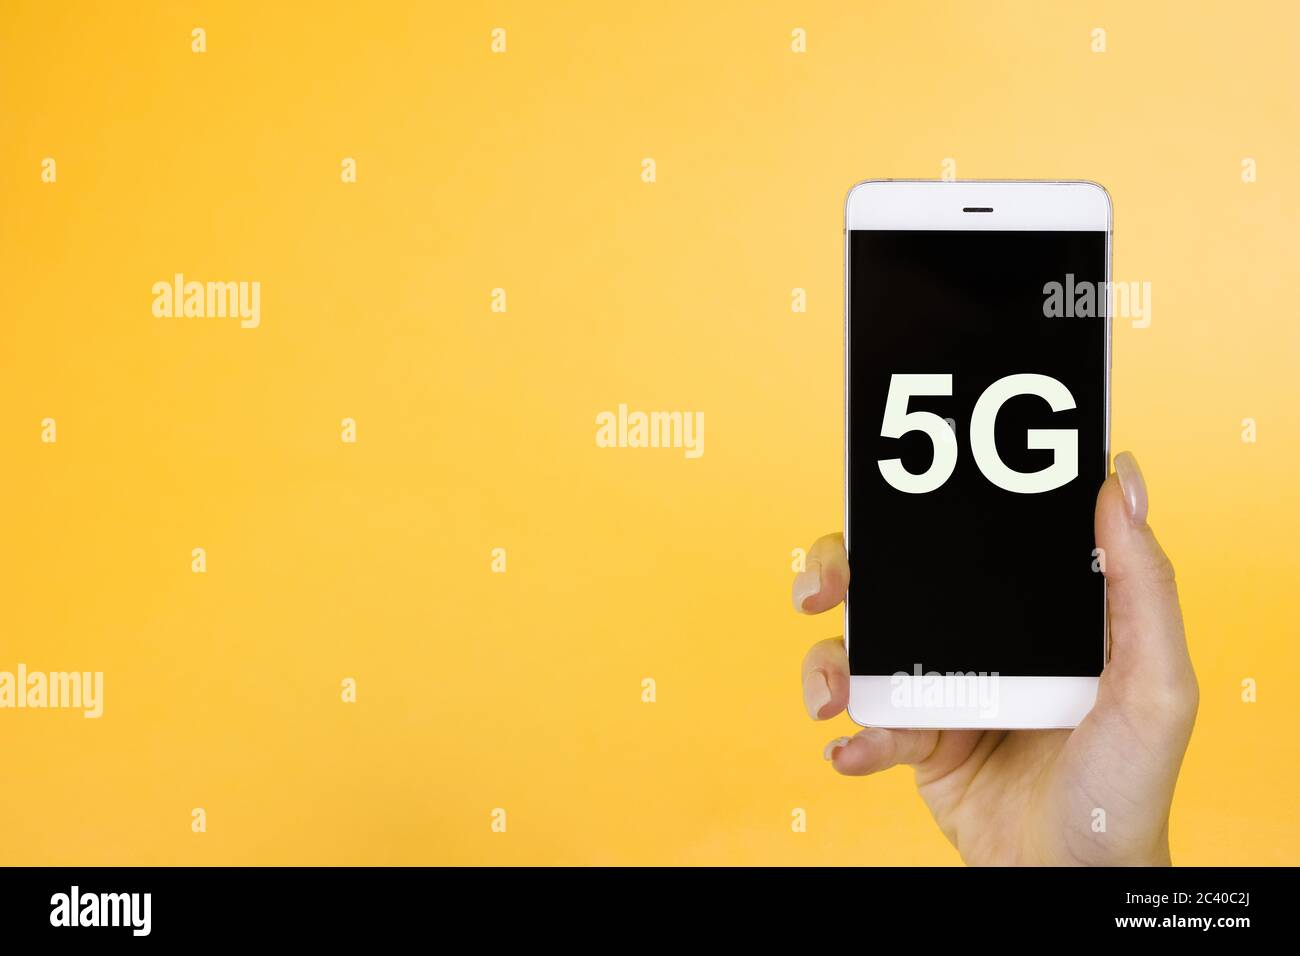 Arrière-plan créatif, main tenant un téléphone avec un symbole 5G. Le concept de réseau 5G, Internet mobile haut débit, réseaux de nouvelle génération Banque D'Images